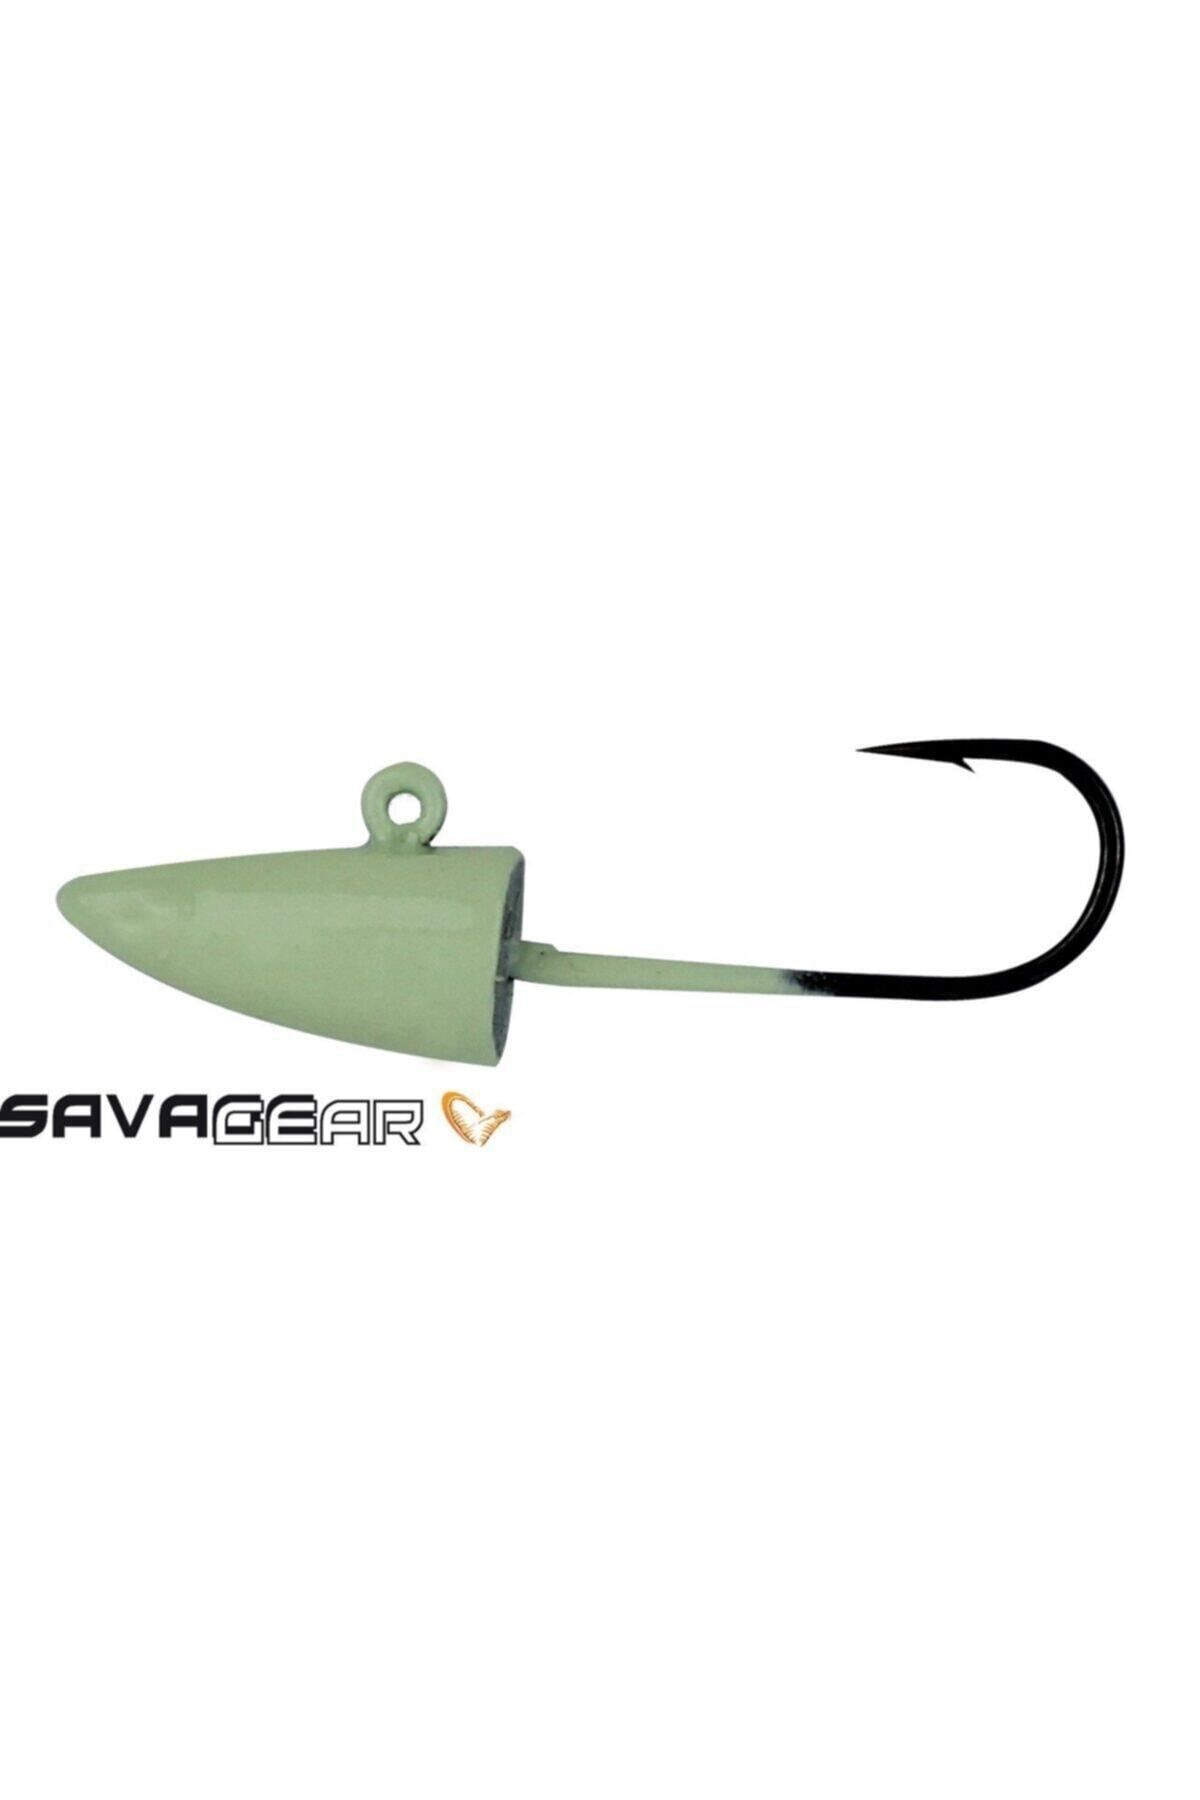 Savage Gear Sg Lrf Micro Sandeel Jig Head 1,5g #8 4pcs Glow New